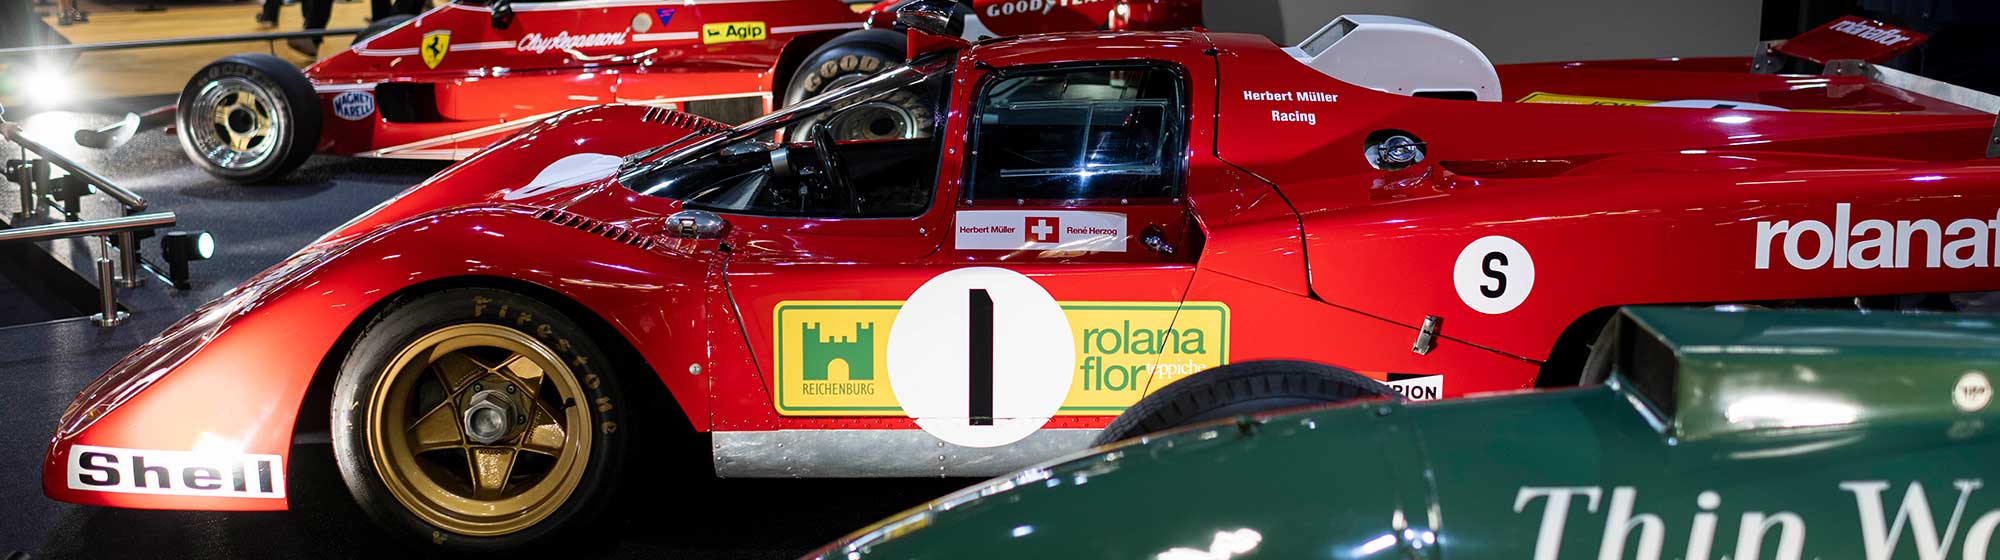 Voiture de Formule 1 appartenant à Ferrari sur le stand Richar Mille à Rétromobile